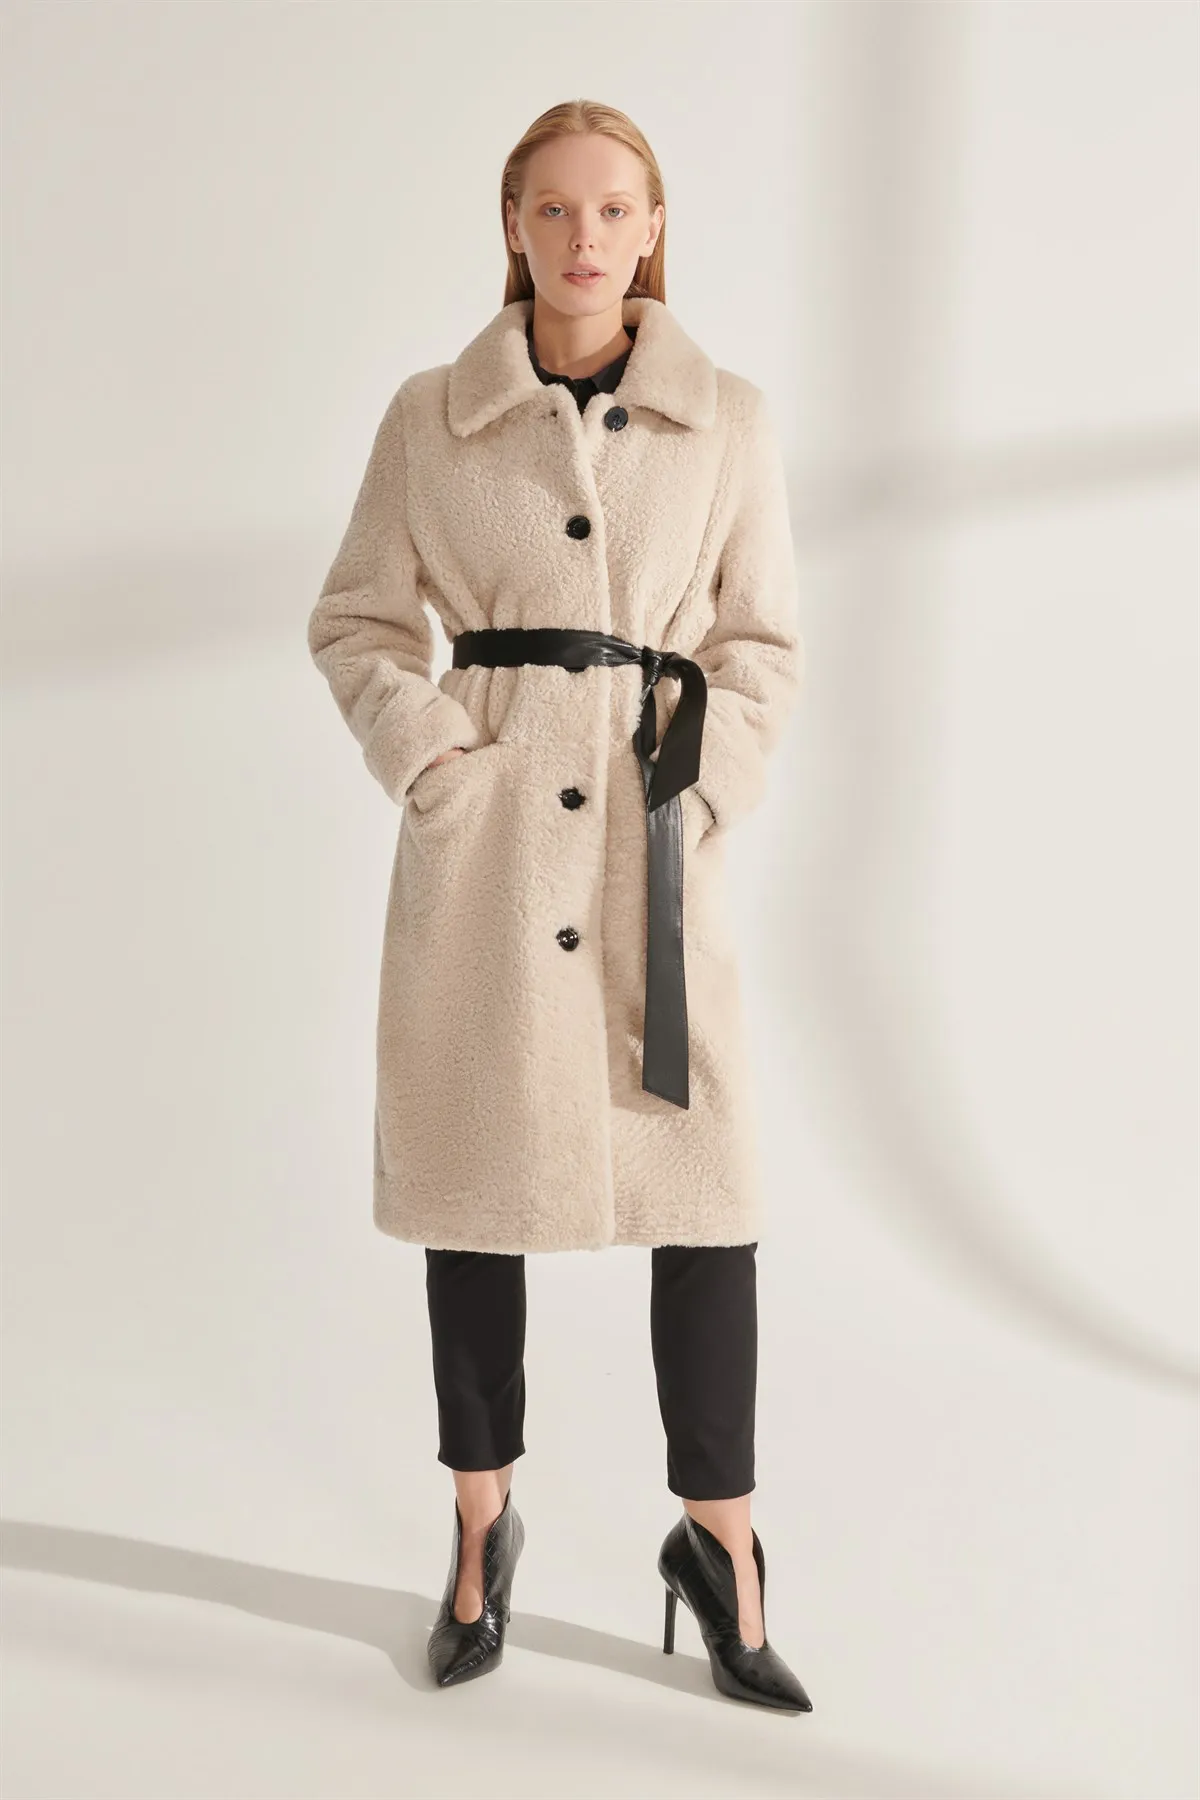 Genuine Fur Jackets Gray Genuine Leather Oversized Coats Women Winter Warm Waterproof Sheepskin Parkas Design New Street Fashion